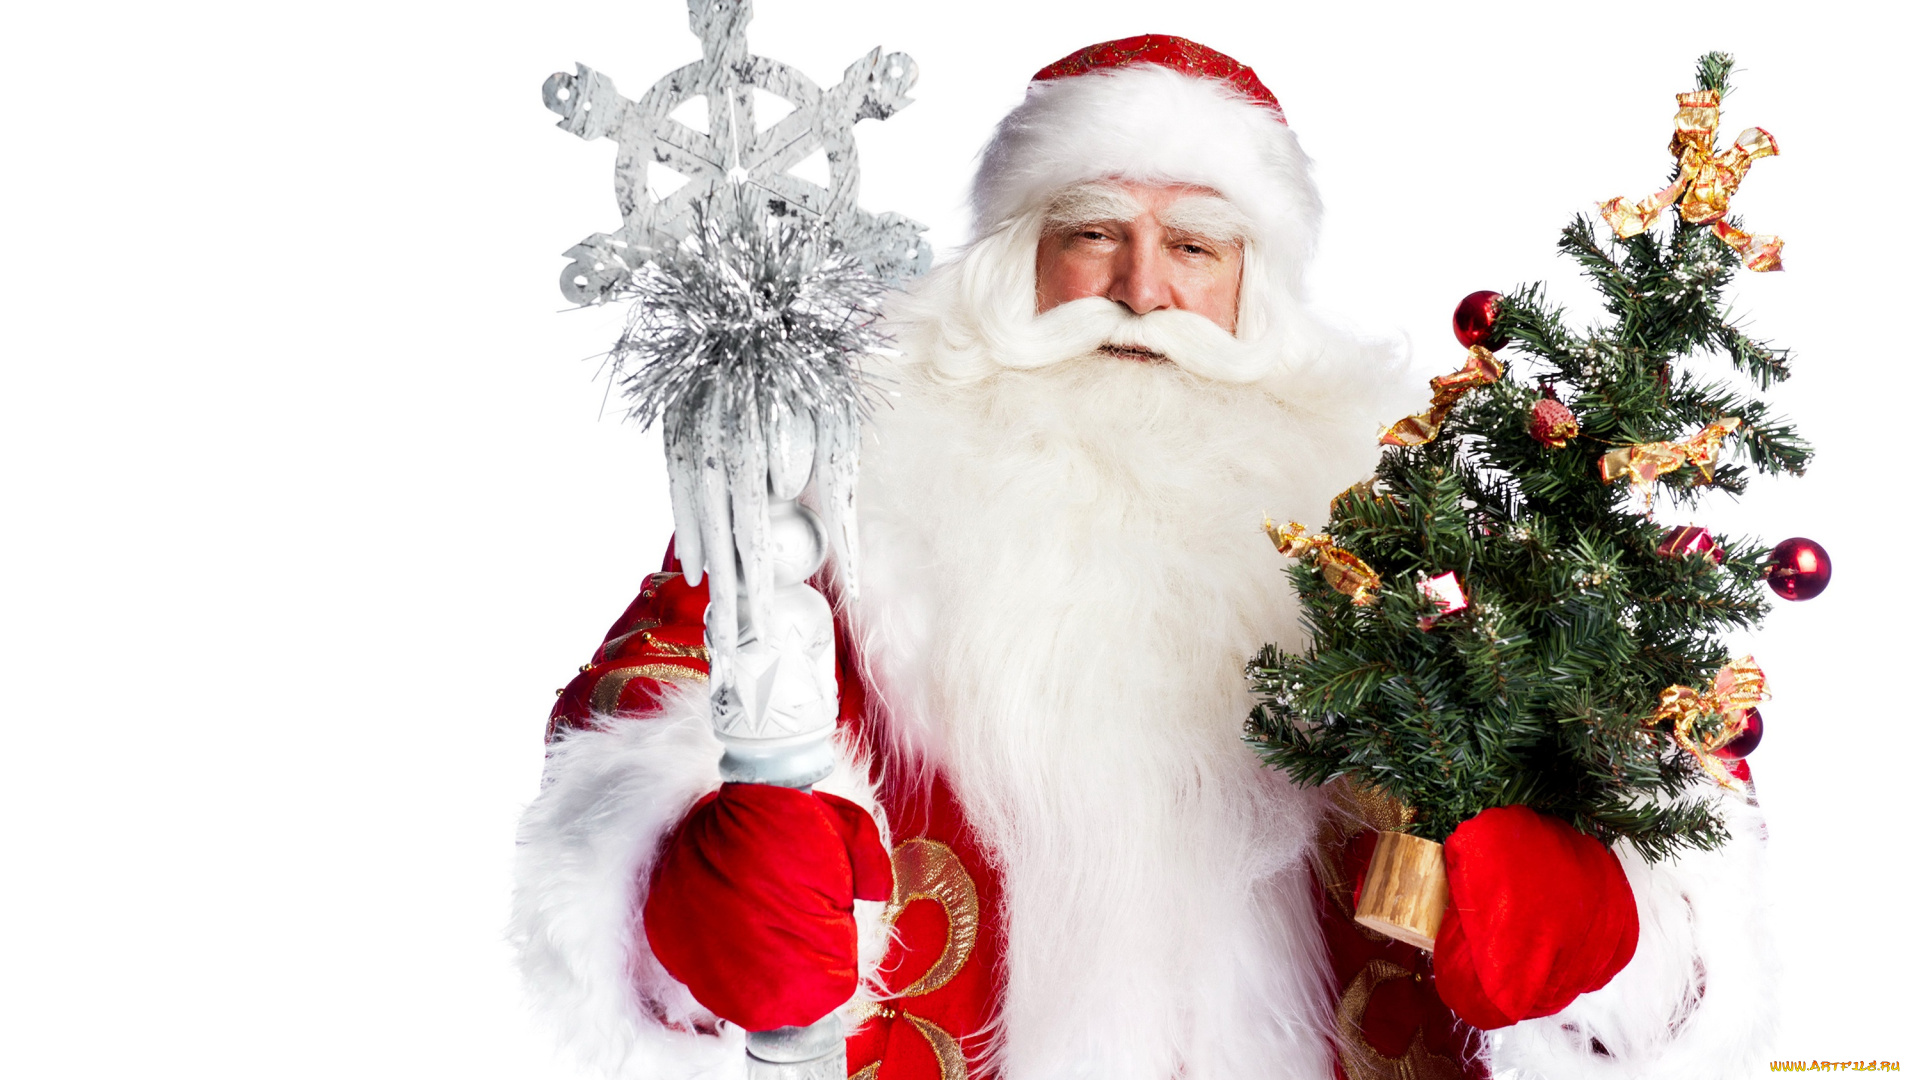 праздничные, дед, мороз, , санта, клаус, борода, шапка, санта-клаус, белый, фон, новый, год, дед, мороз, шуба, праздник, посох, варежки, ёлка, красная, игрушки, рождество